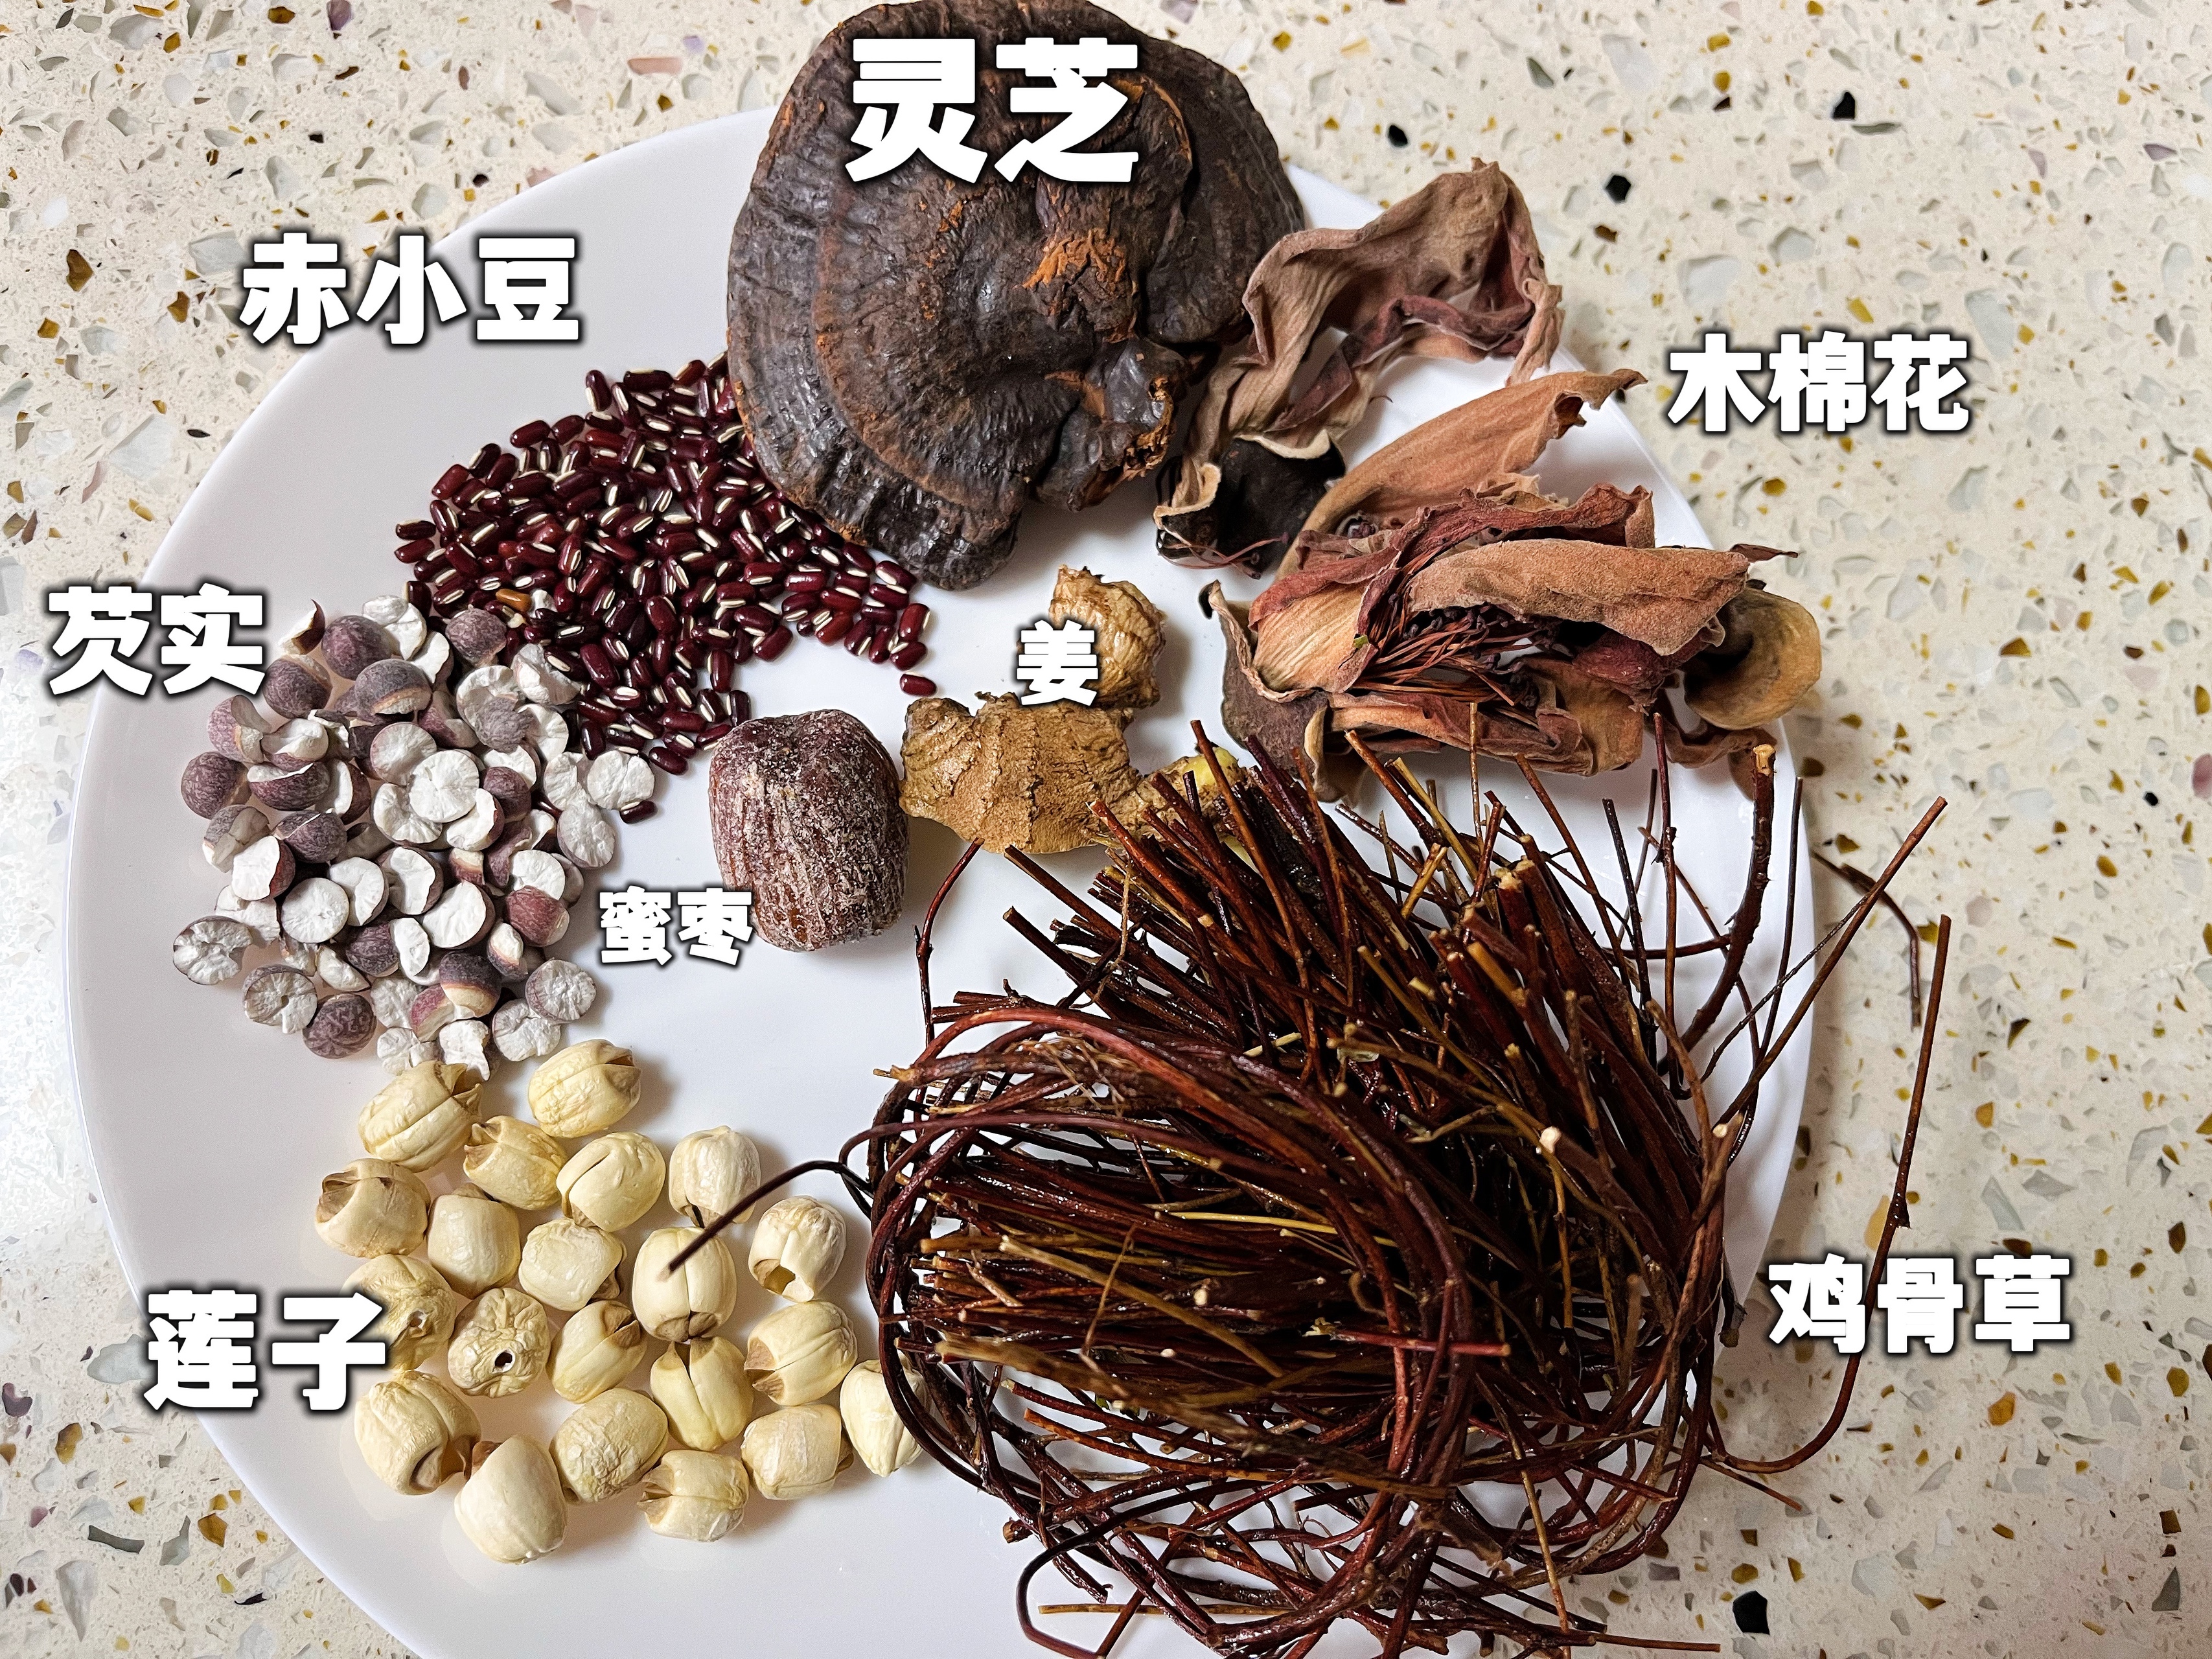 广东靓汤——清热解毒去骨火的鸡骨草灵芝煲猪骨的做法